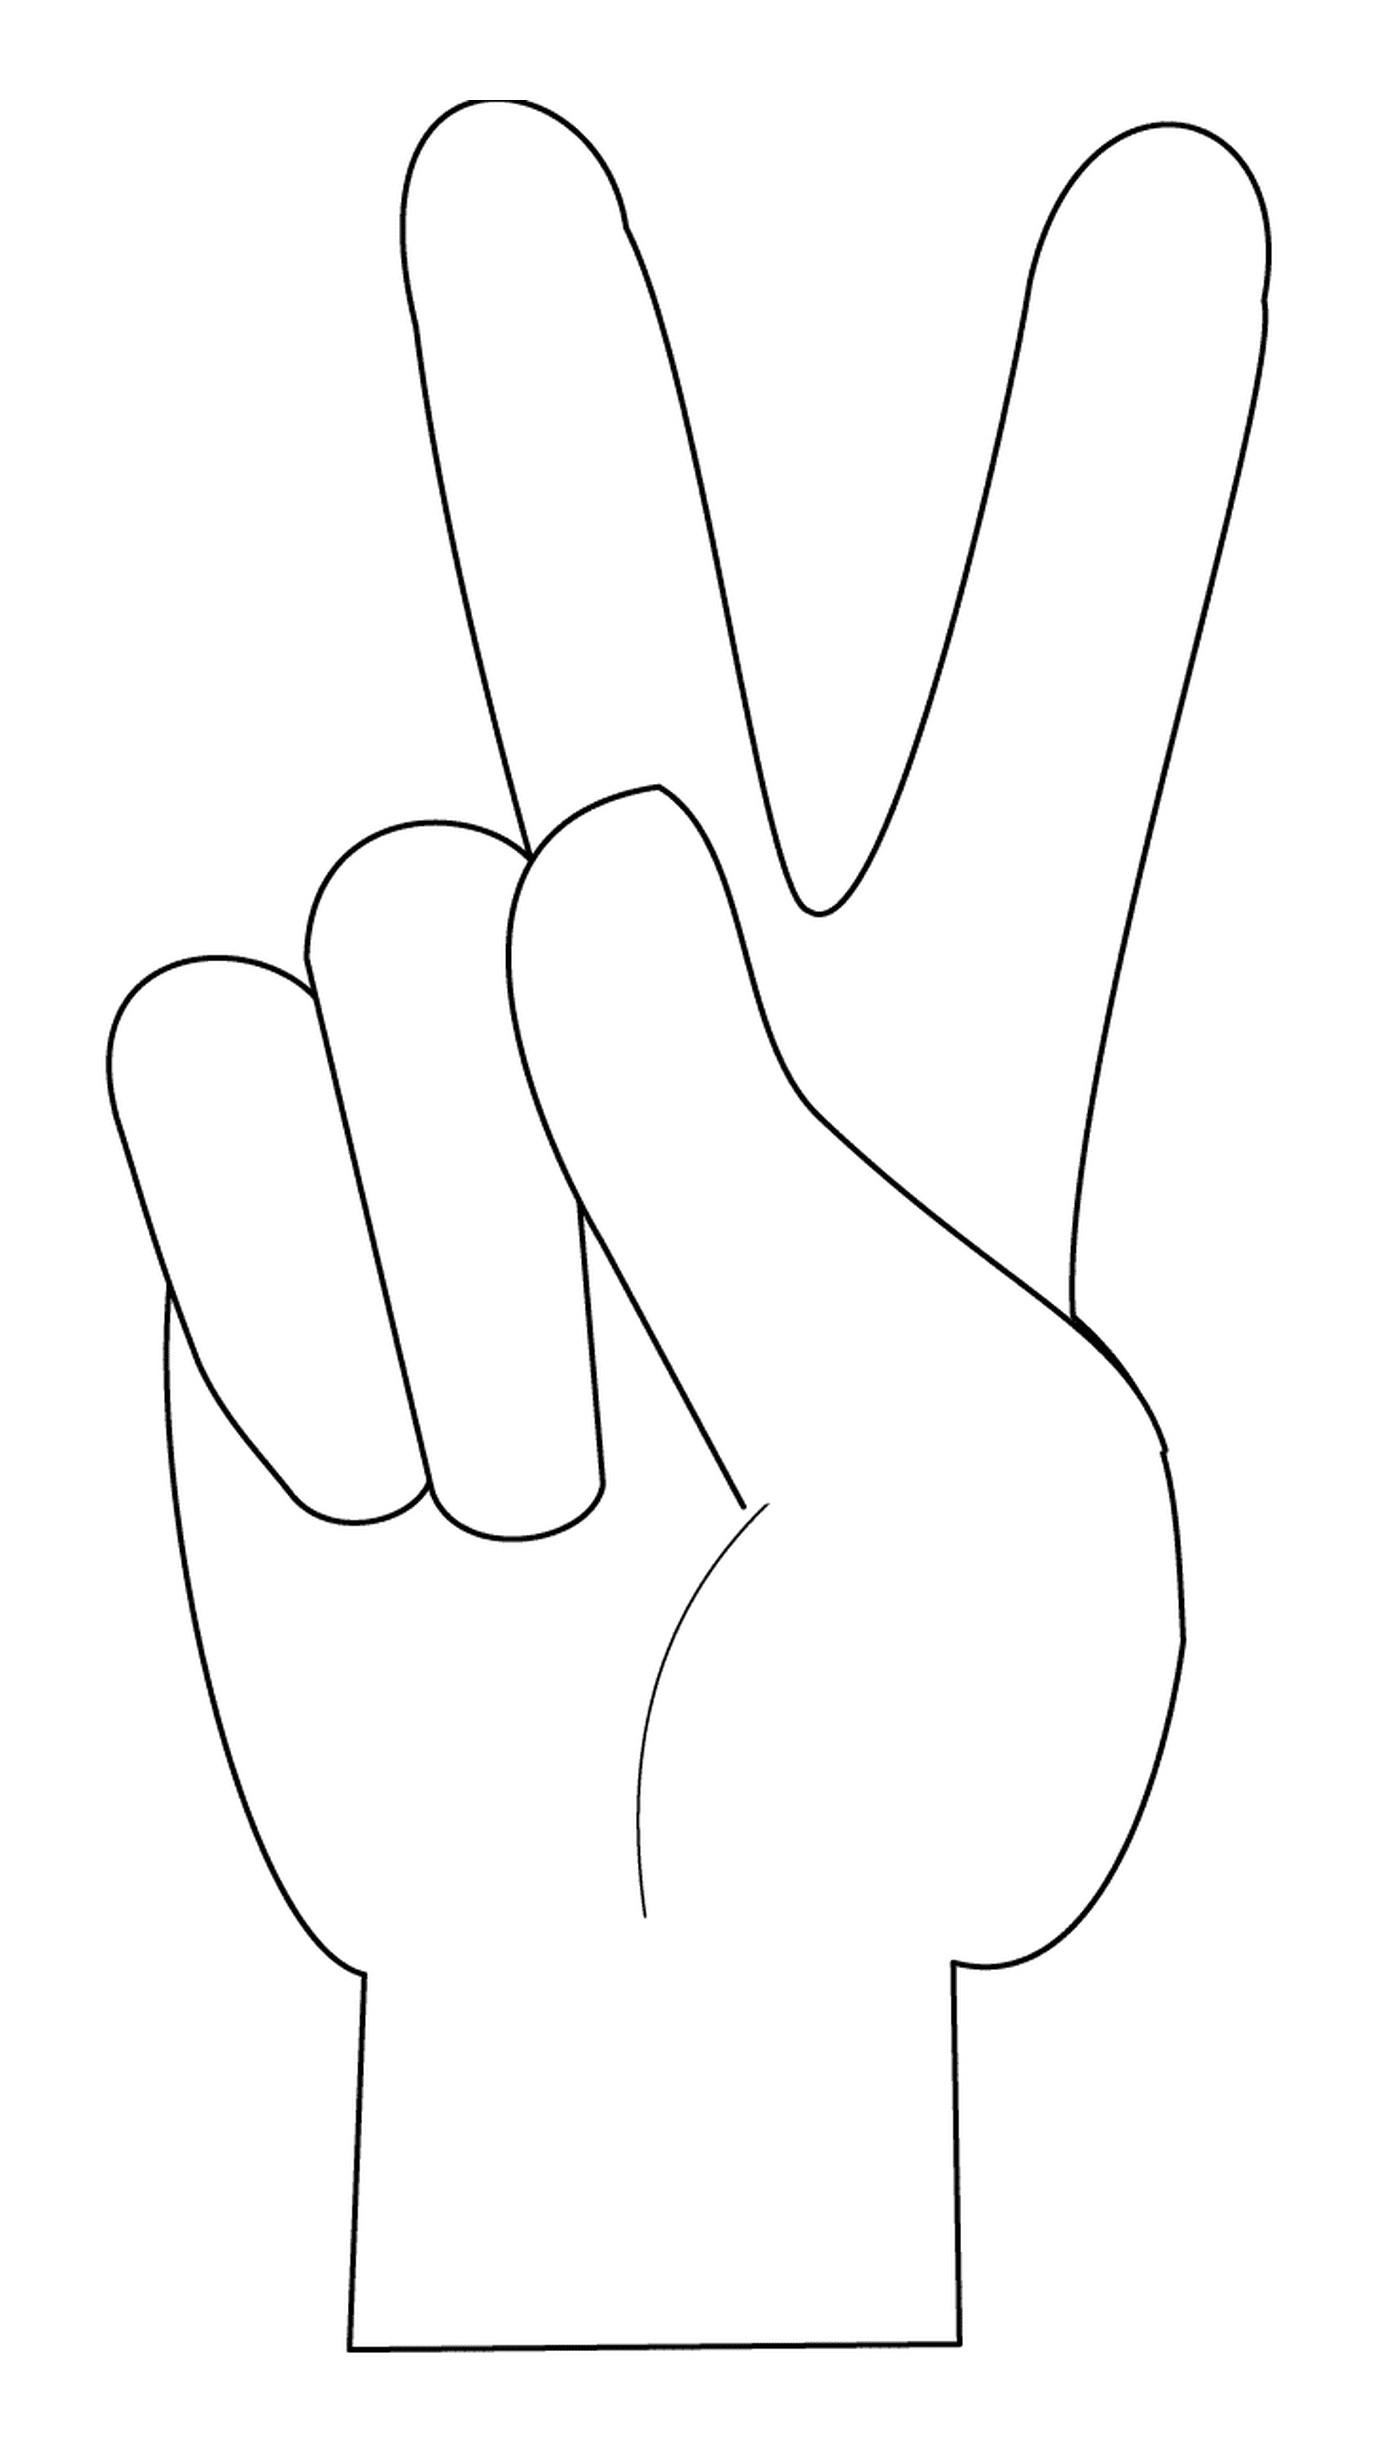  Signo de paz con la mano 